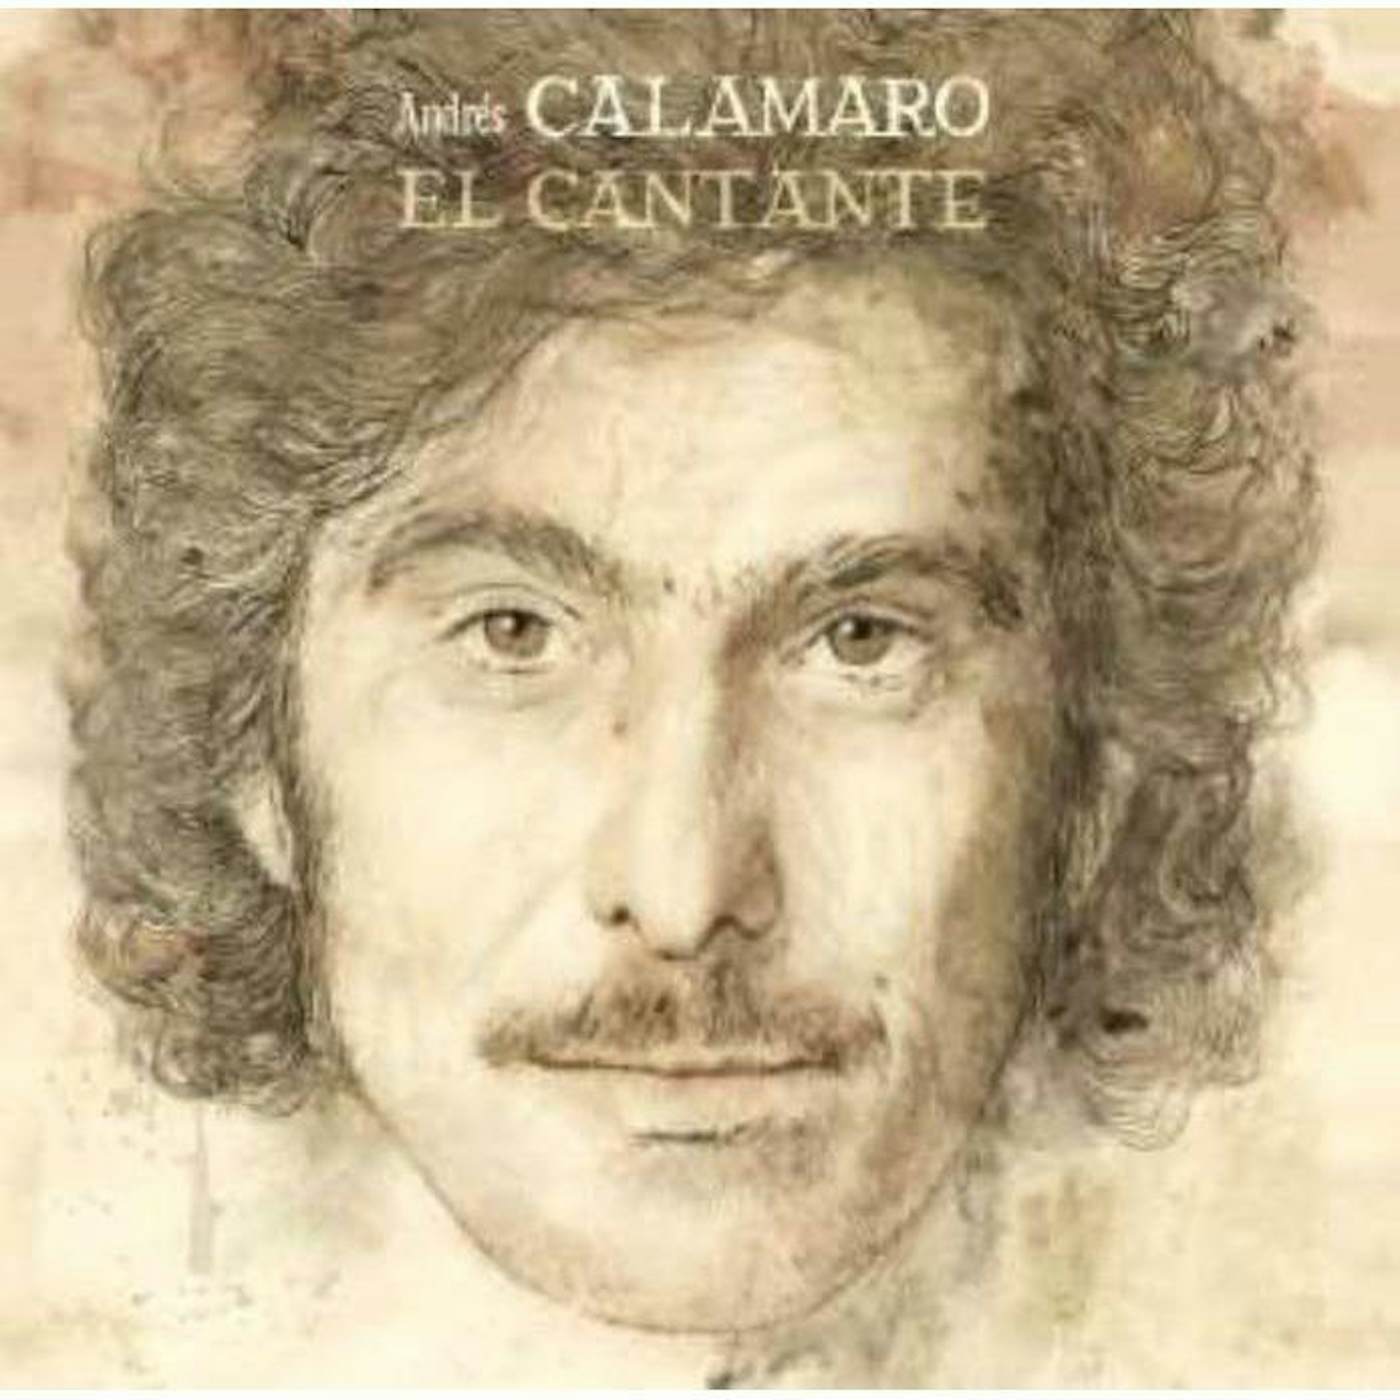 Andrés Calamaro El Cantante Vinyl Record